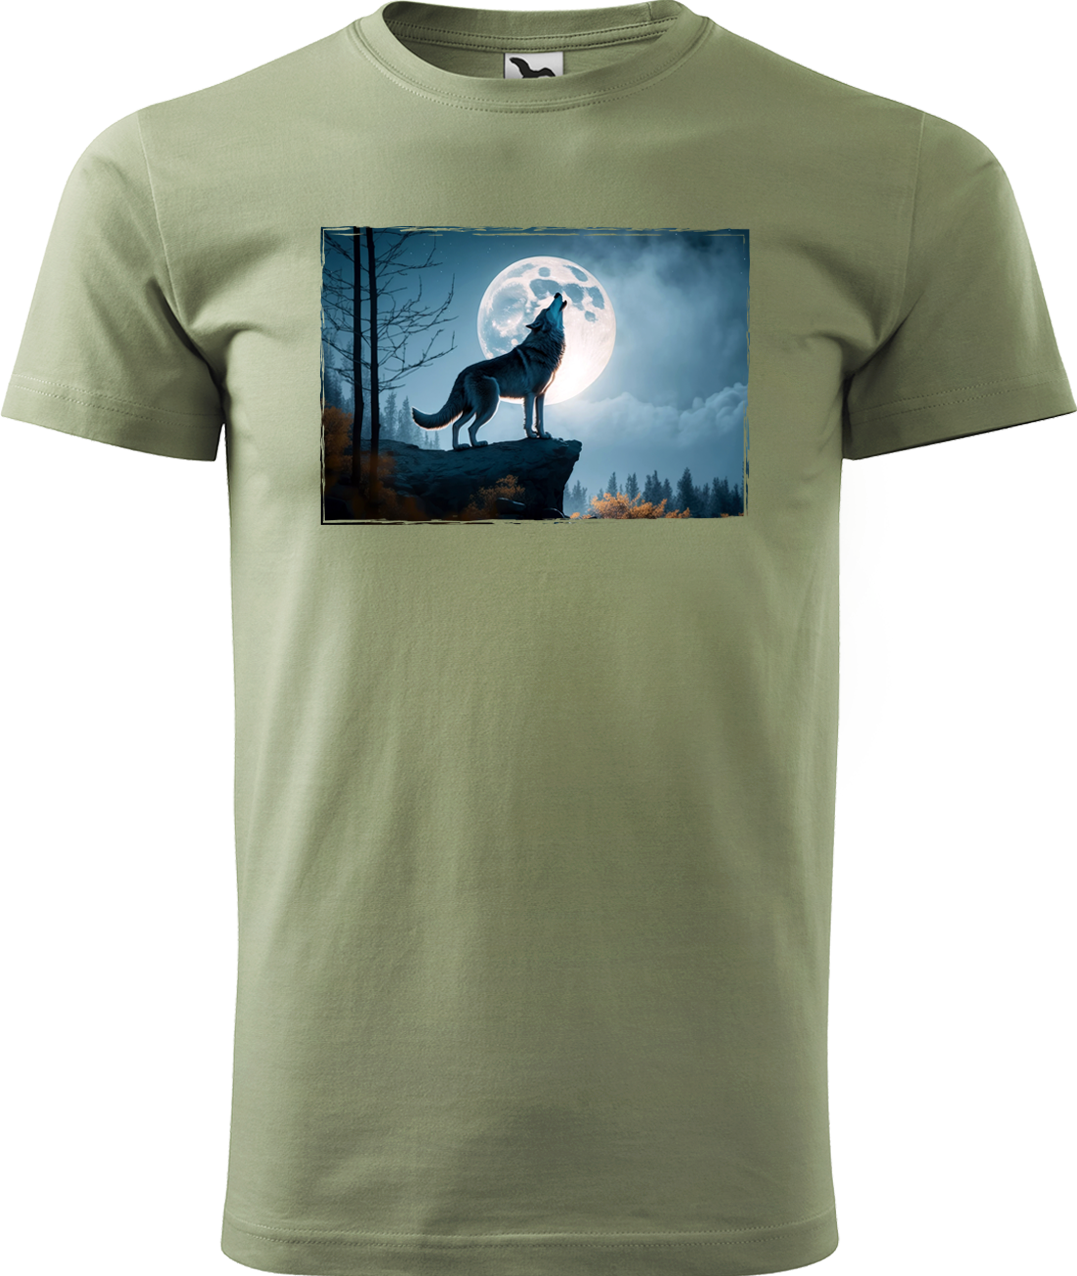 Pánské tričko s vlkem - Vyjící vlk Velikost: M, Barva: Světlá khaki (28)